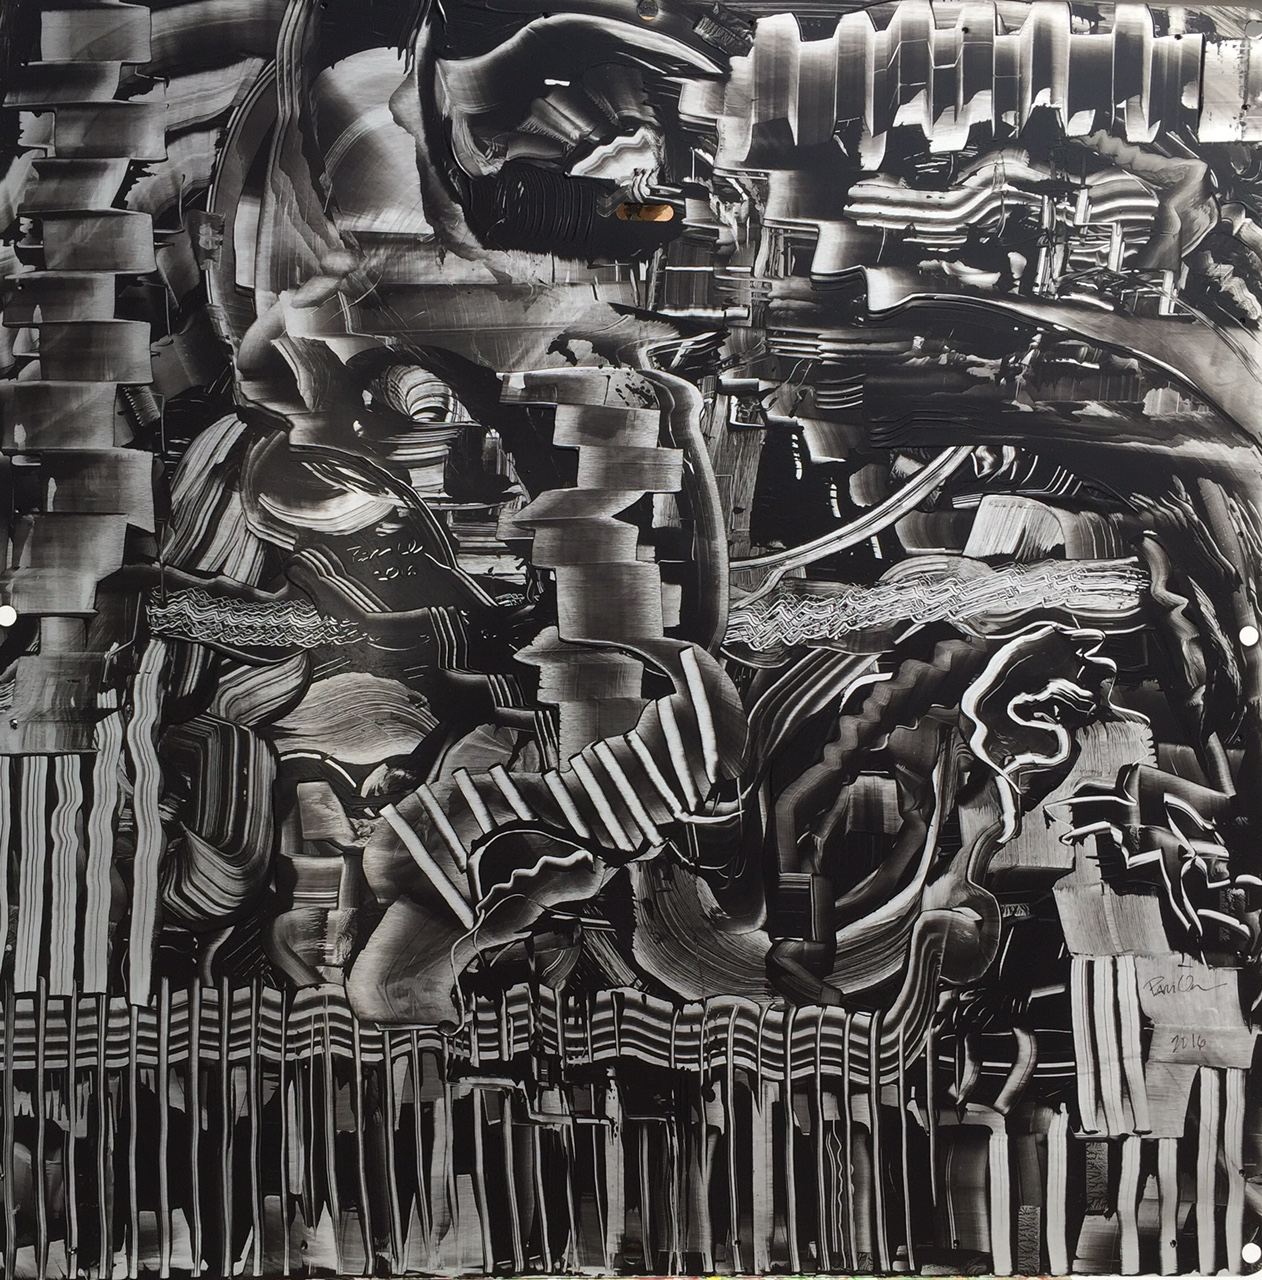  Fences and Trances, 2016, 28" x 28", Acrylic on Aluminum   